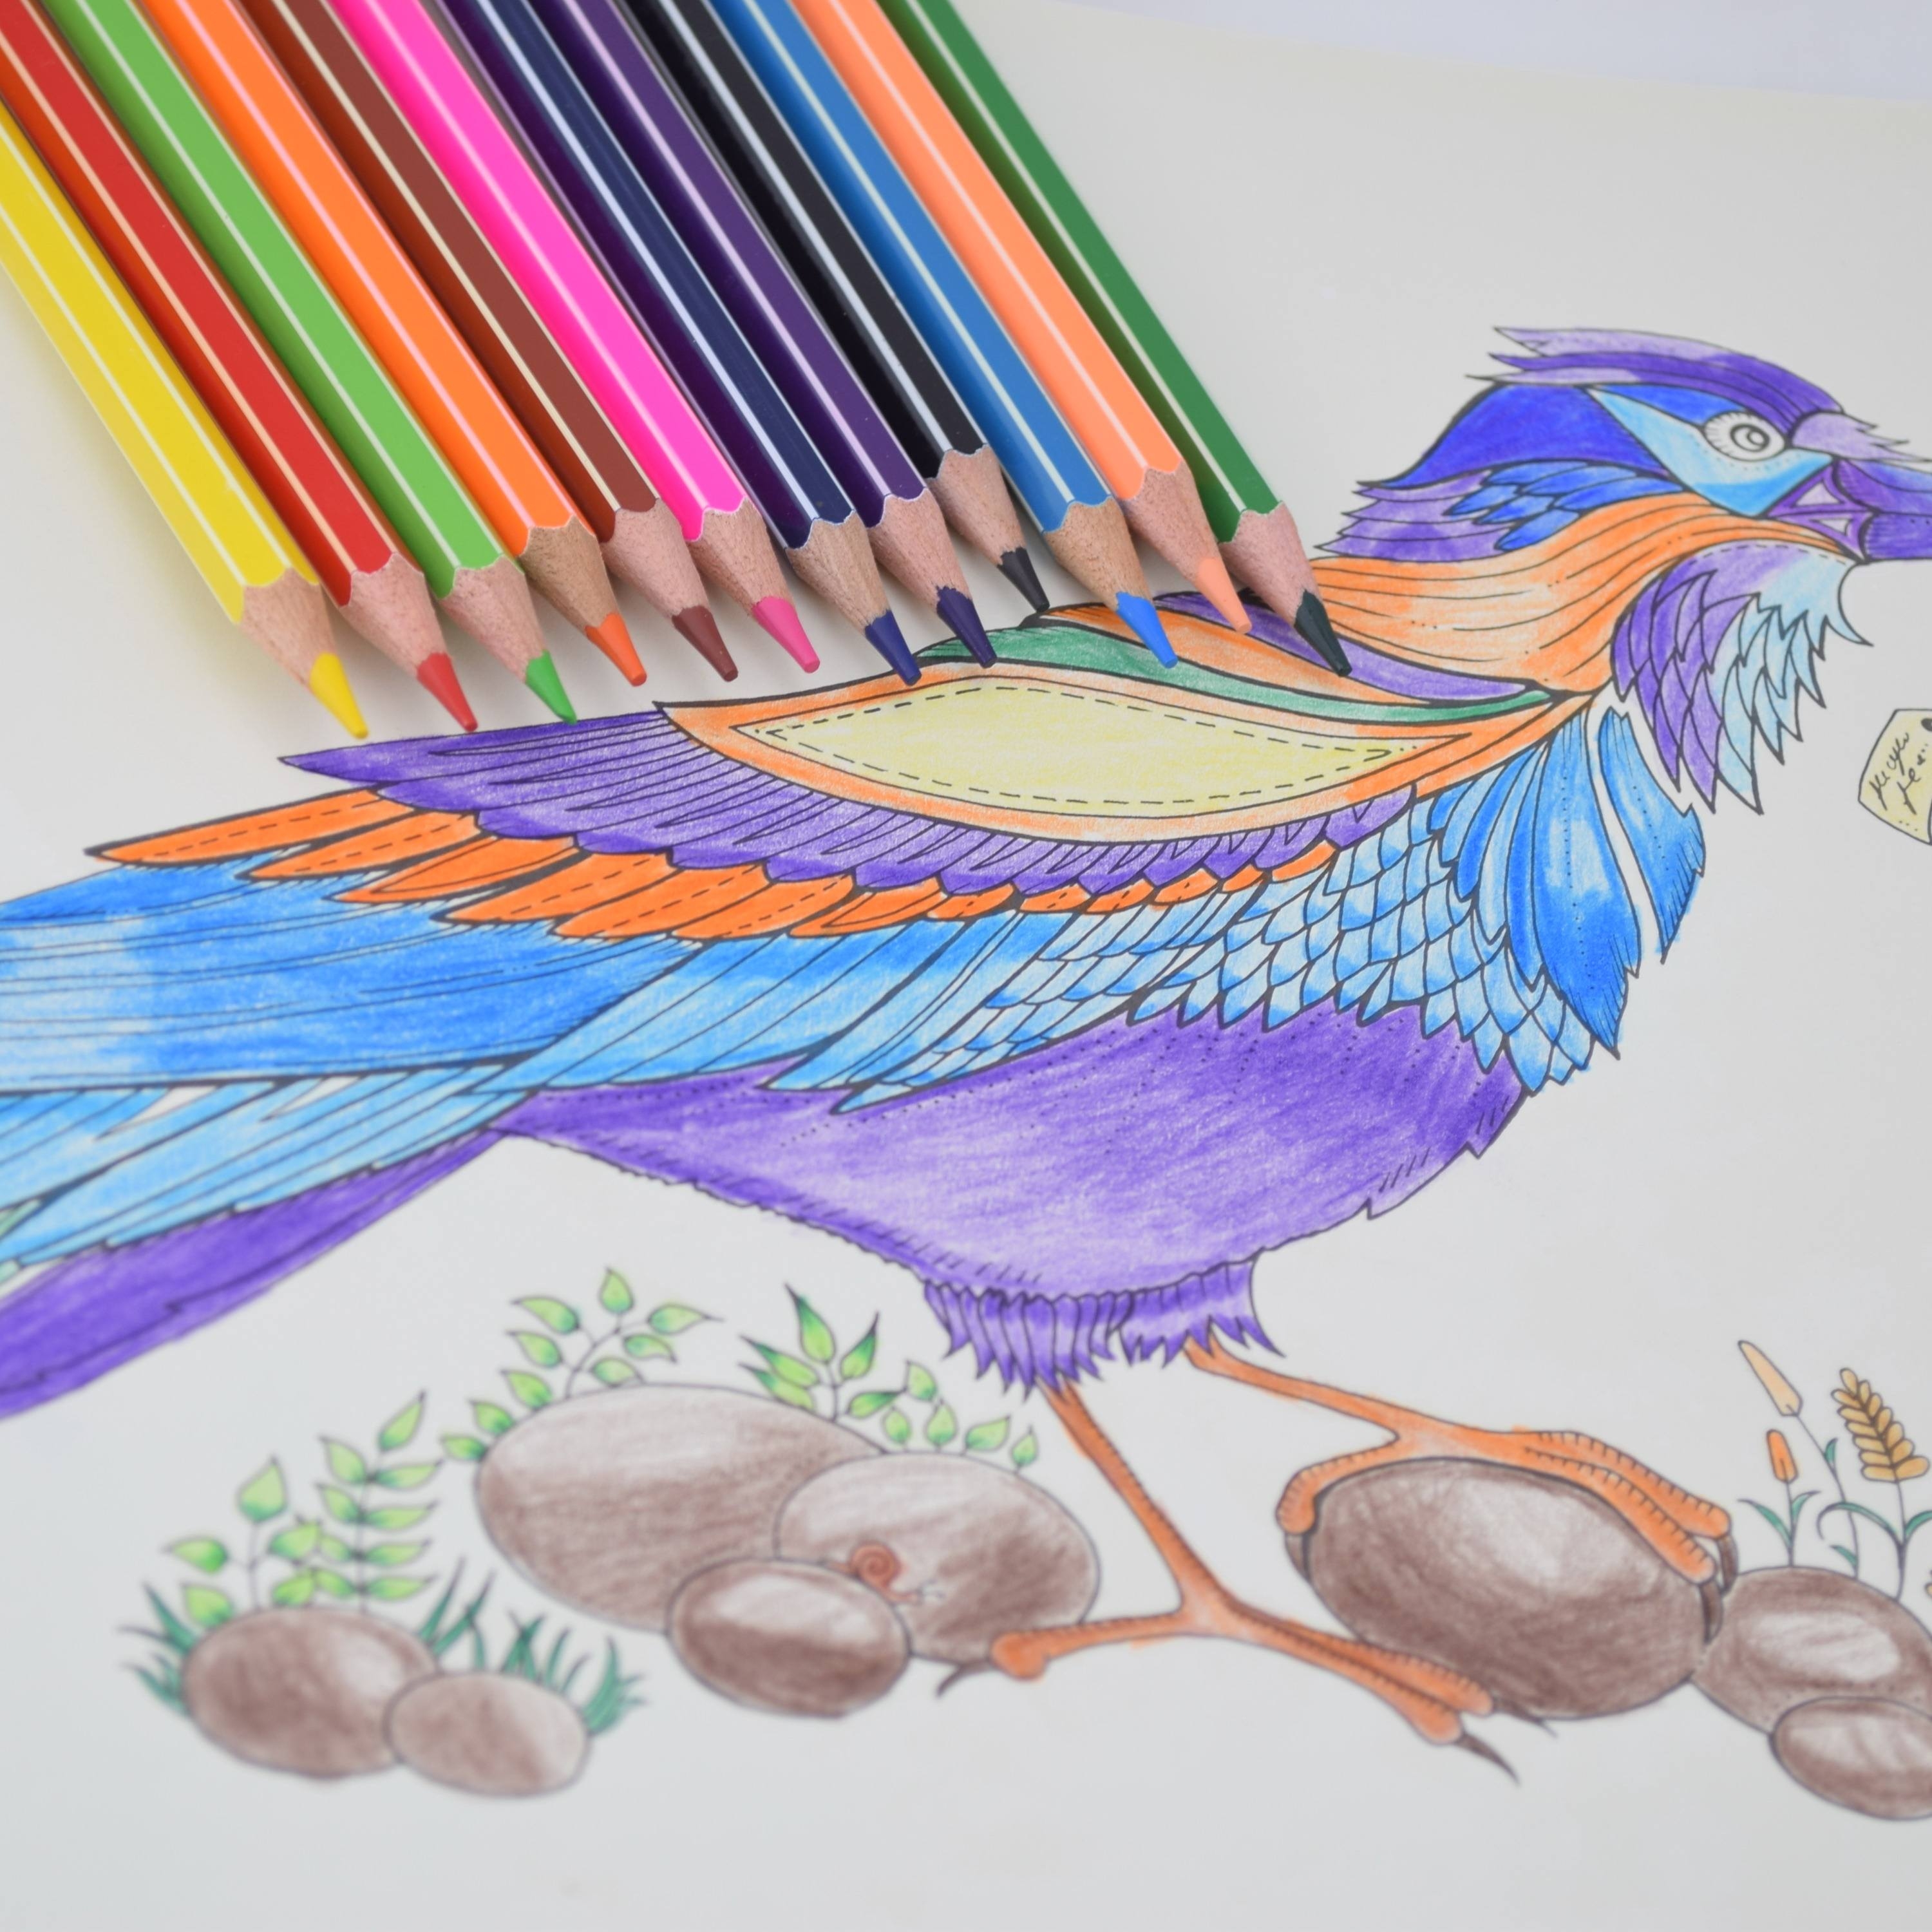 Интересные цветными карандашами. Рисование цветными карандашами. Рисование цветными карандашами для детей. Карандаши цветные. Иллюстрации цветными карандашами.